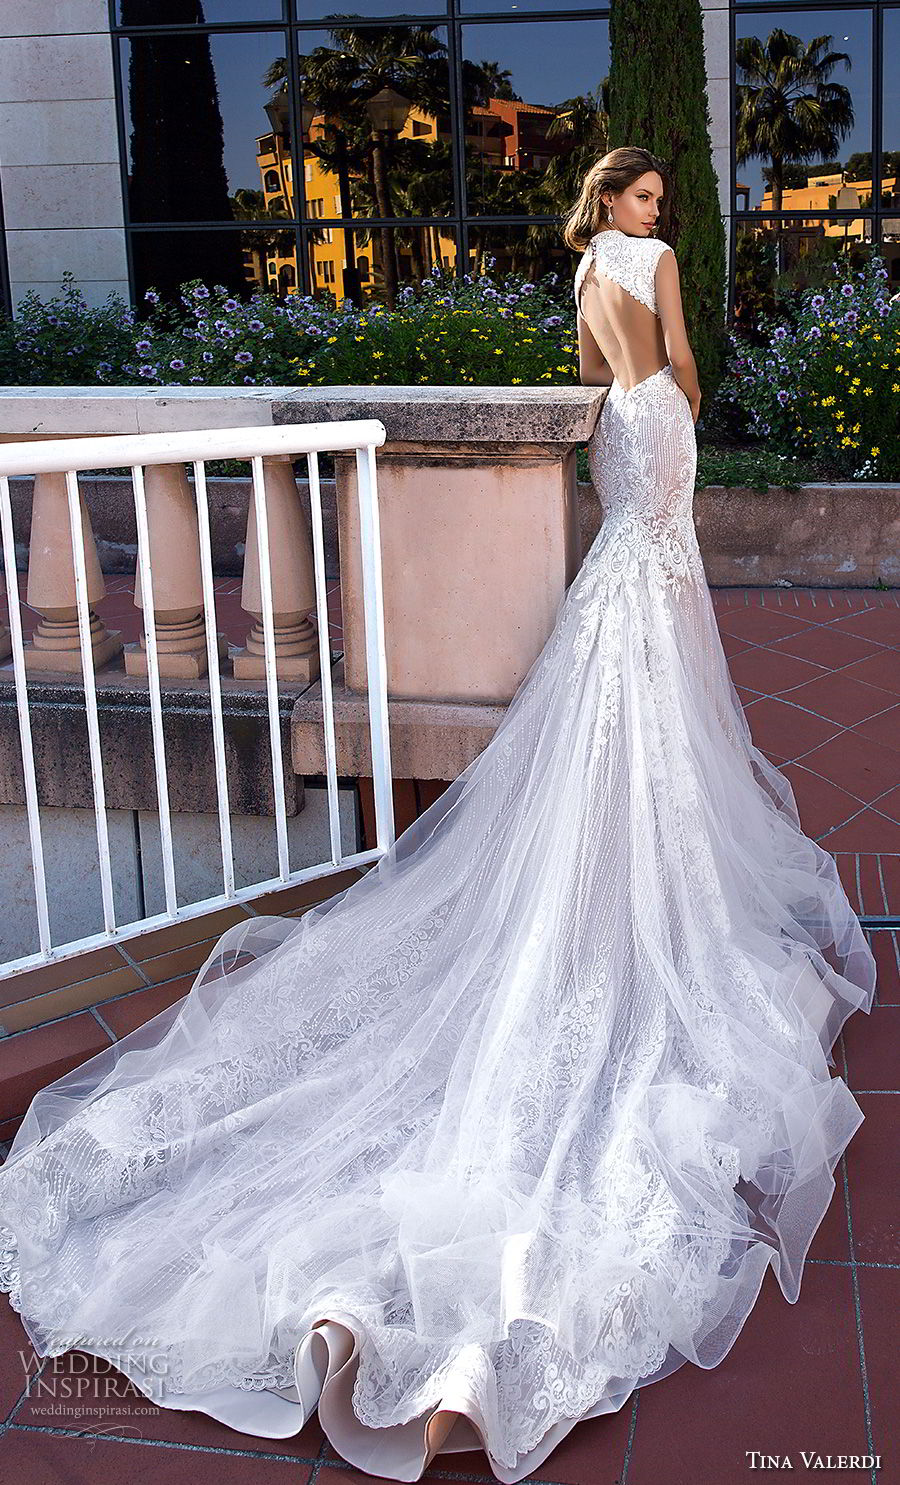 Cocktail Wedding Dress for a Light and Romantic Look - Tina Valerdi